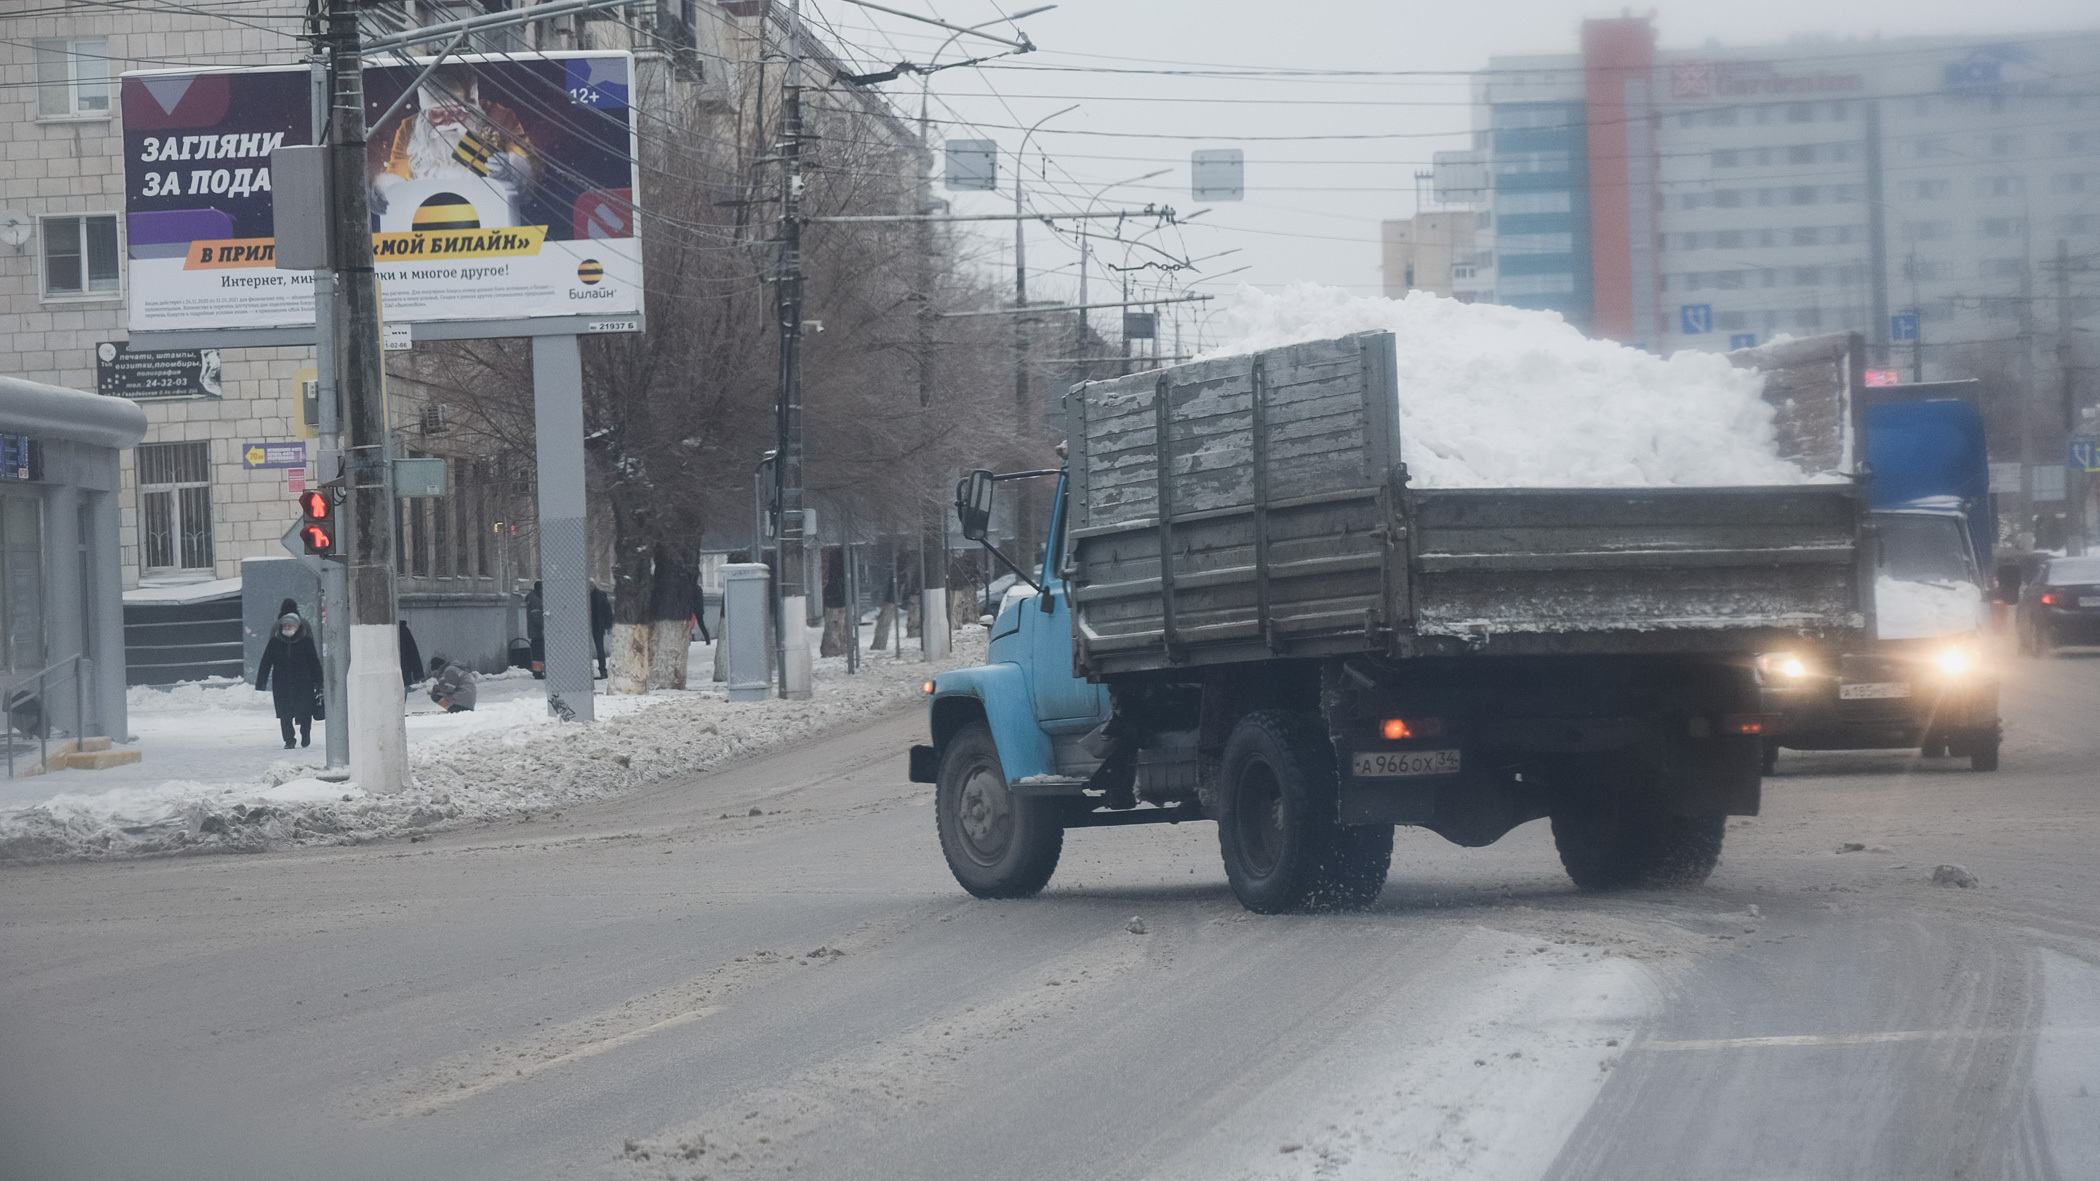 «Гоняют под 90!»: жители Ижевска жалуются на скорость вождения самосвалов со снегом